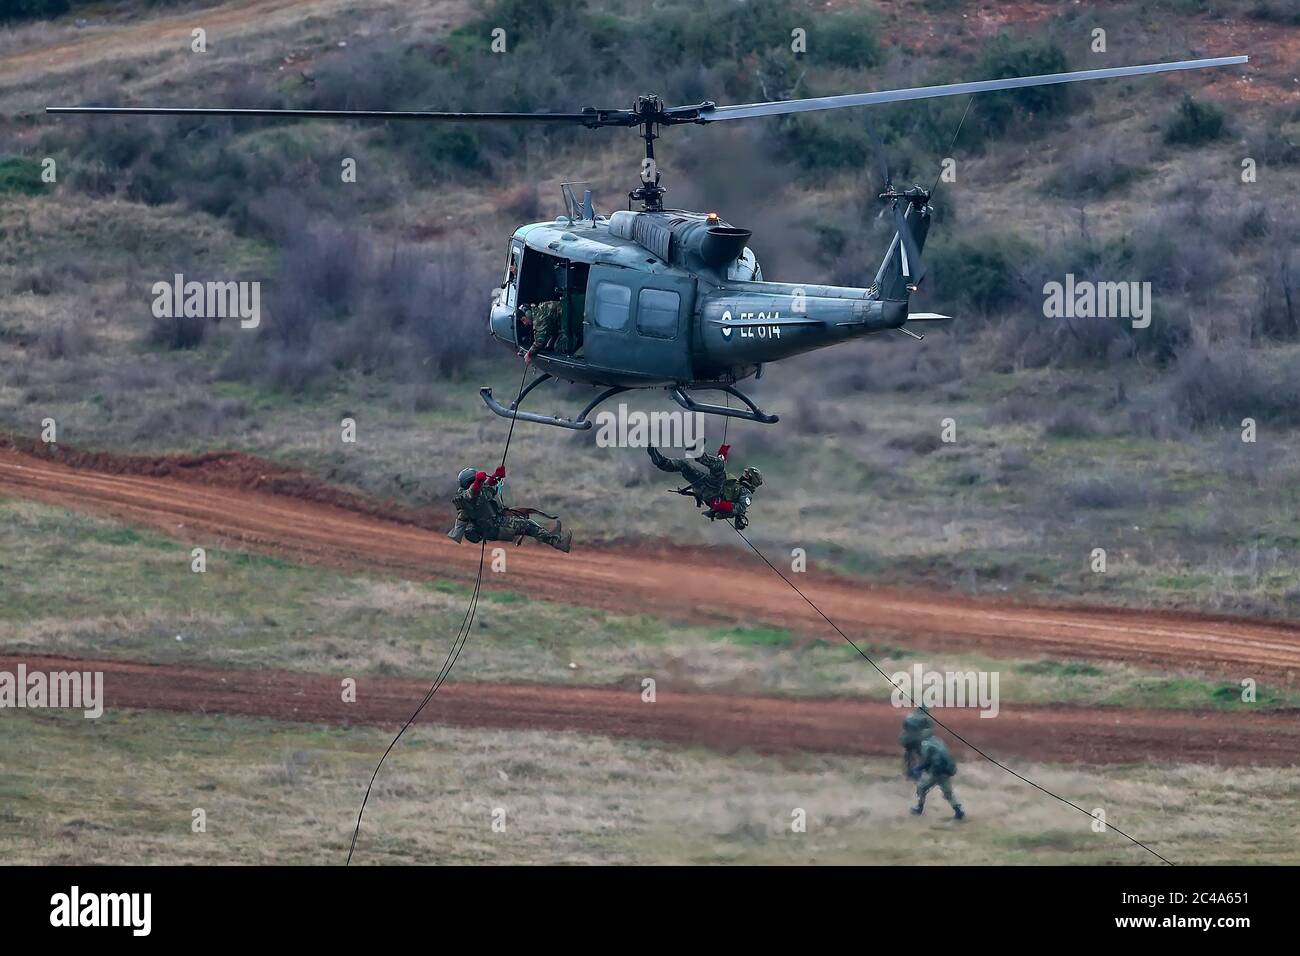 Askos, Grecia - Feb 14, 2020: UH-1H Huey Helicopter participa en un ejercicio militar internacional con fuego real (Golden Fleece -20) entre griego, Foto de stock